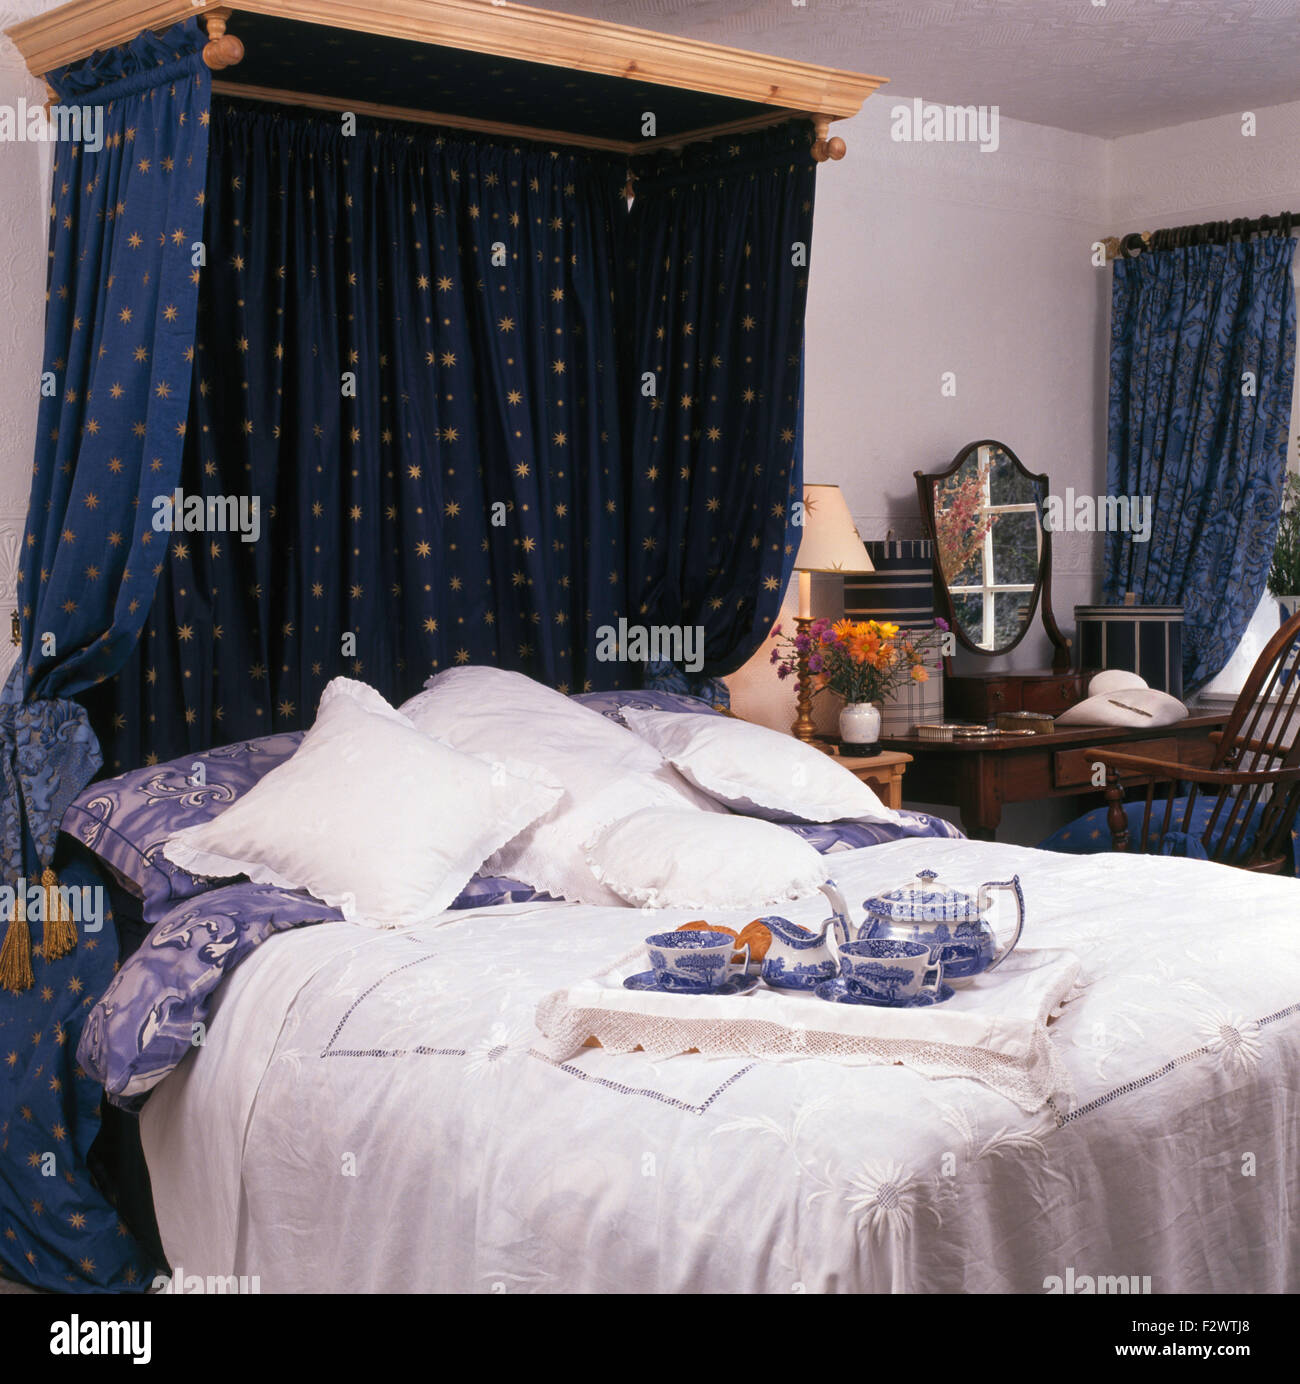 Dunkel blaue Vorhänge auf hölzernen Baldachin über dem Bett mit Frühstückstablett in neunziger Jahre Schlafzimmer Stockfoto